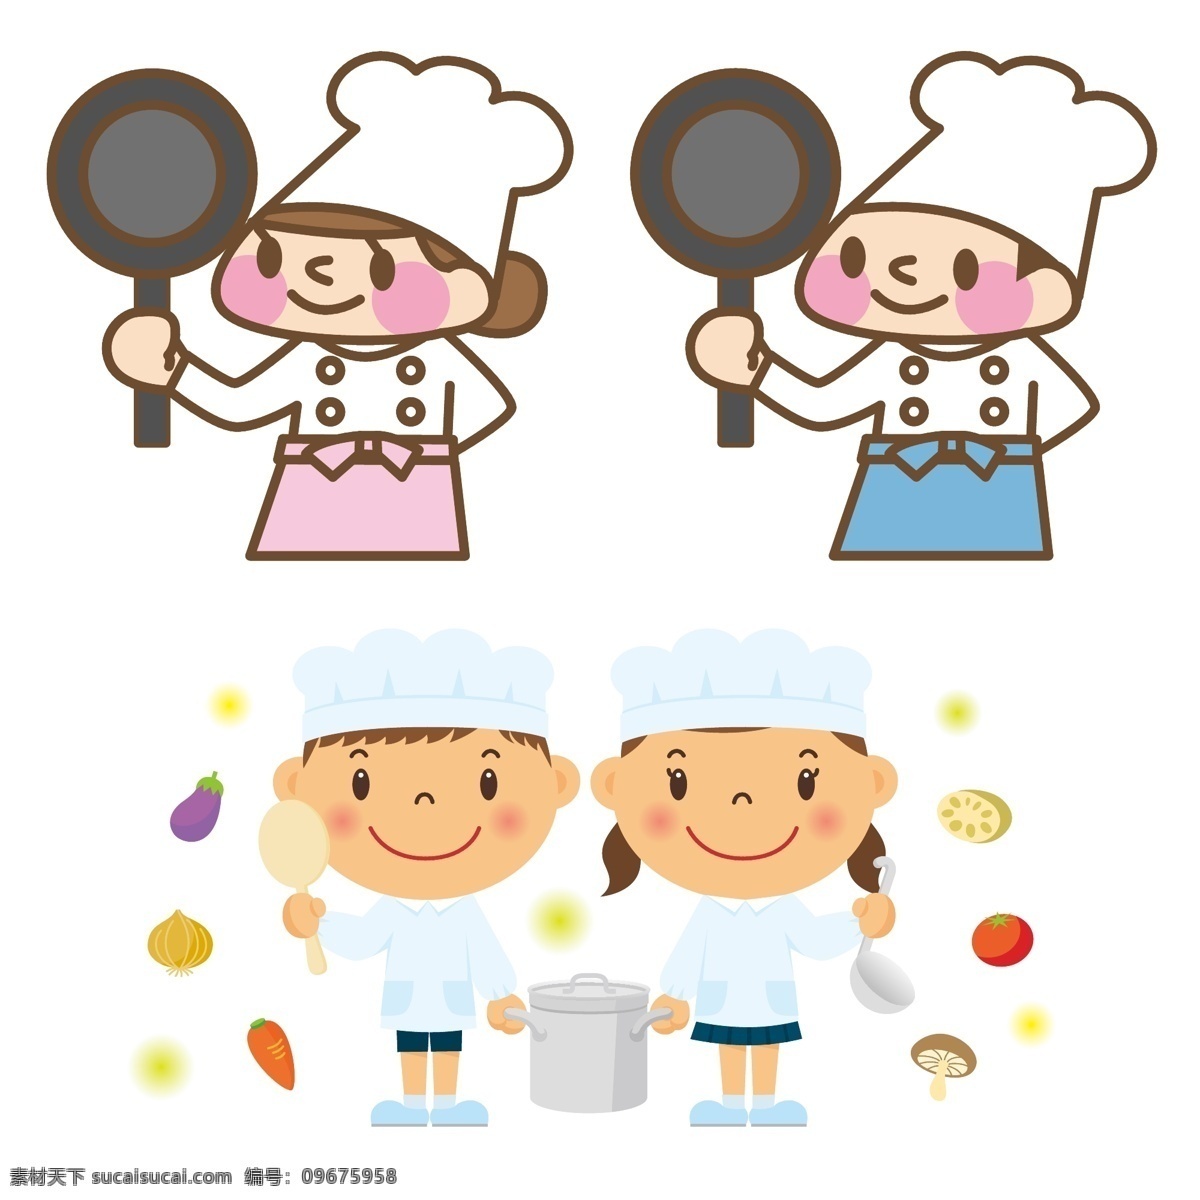 厨师卡通图片 厨师 卡通 男 女 平底锅 儿童 配餐员 男孩 女孩 蔬菜 动漫卡通插图 动漫动画